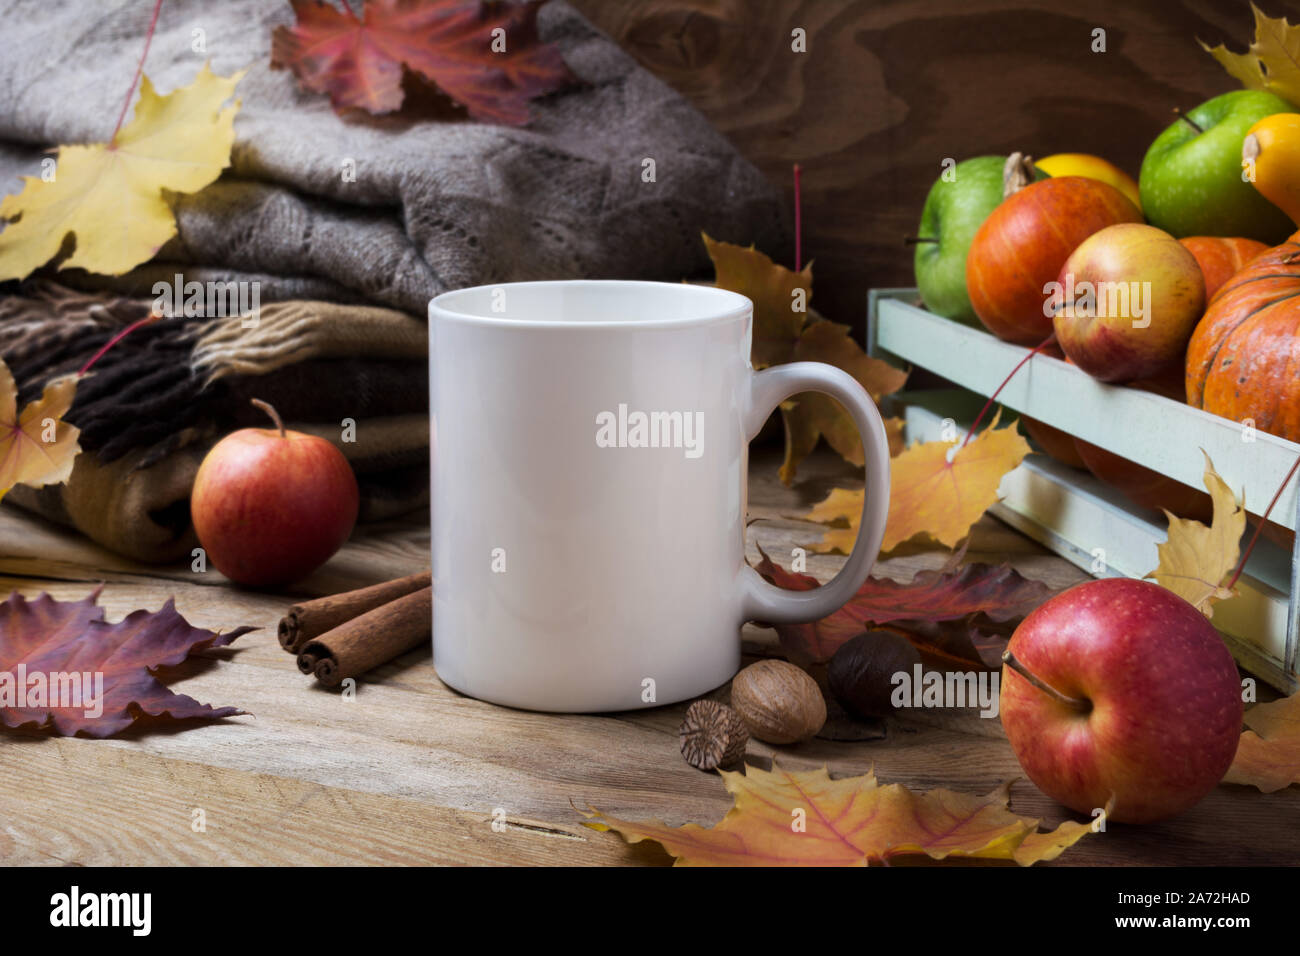 White tazza da caffè mockup con maglia plaid, acero cadono le foglie e le mele. Boccale vuoto mock up per la promozione del design. Foto Stock